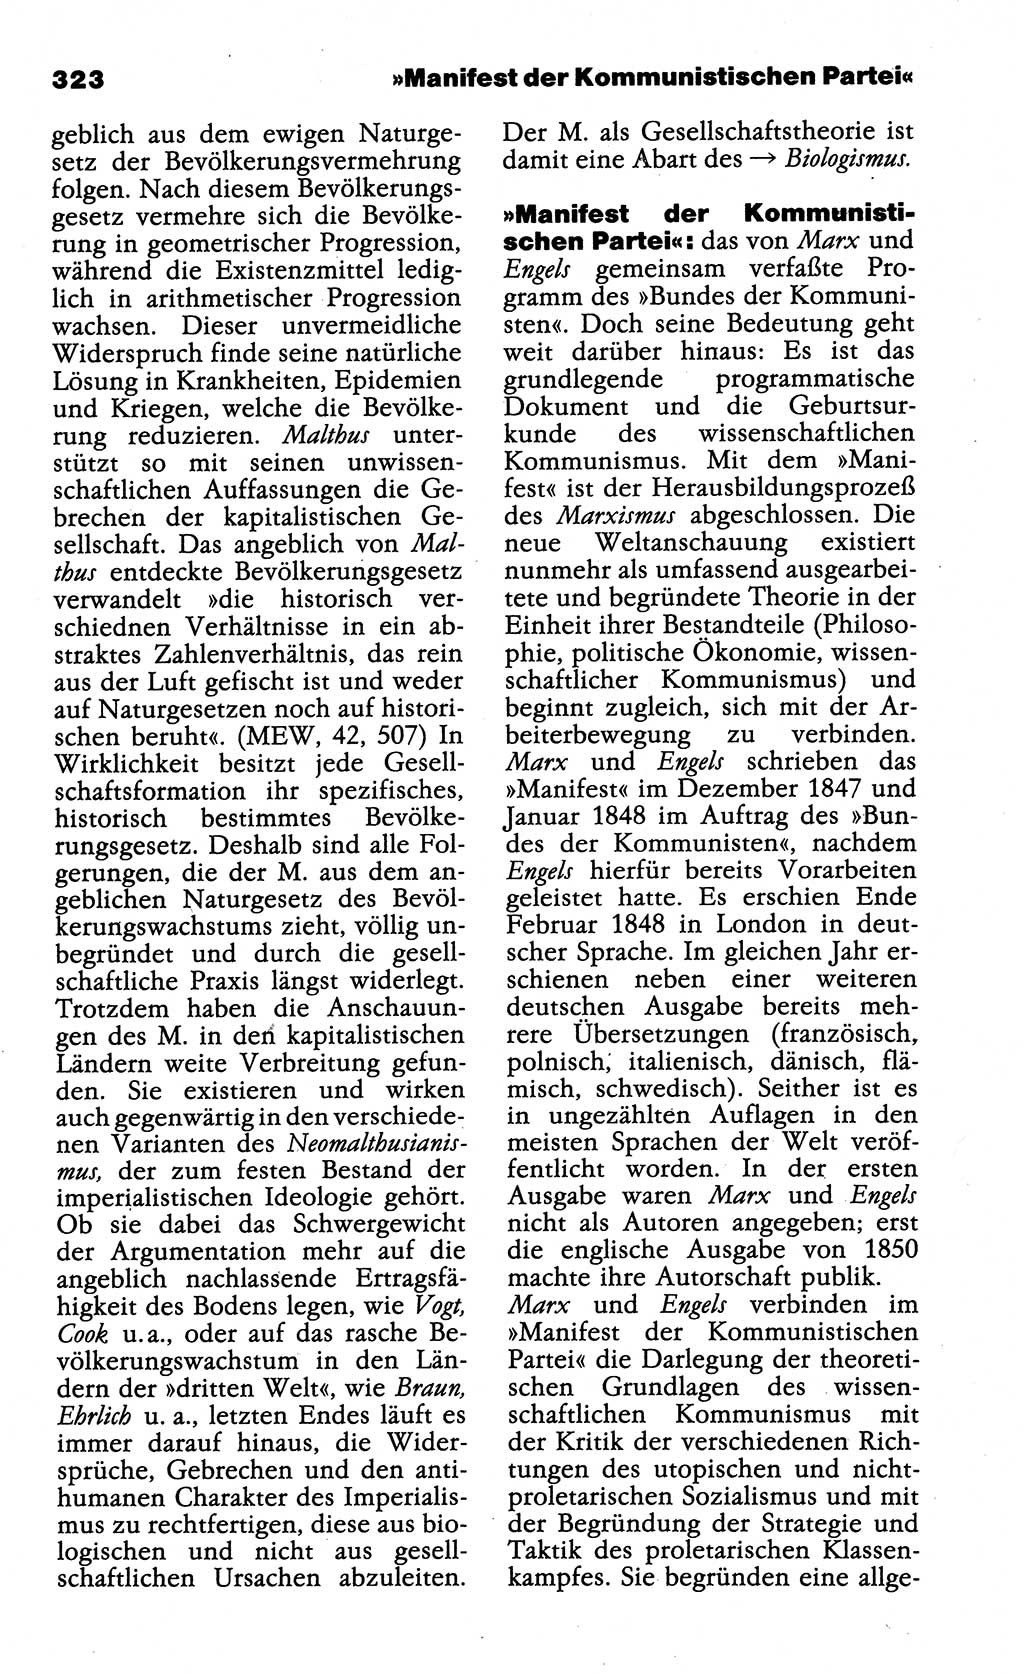 Wörterbuch der marxistisch-leninistischen Philosophie [Deutsche Demokratische Republik (DDR)] 1985, Seite 323 (Wb. ML Phil. DDR 1985, S. 323)